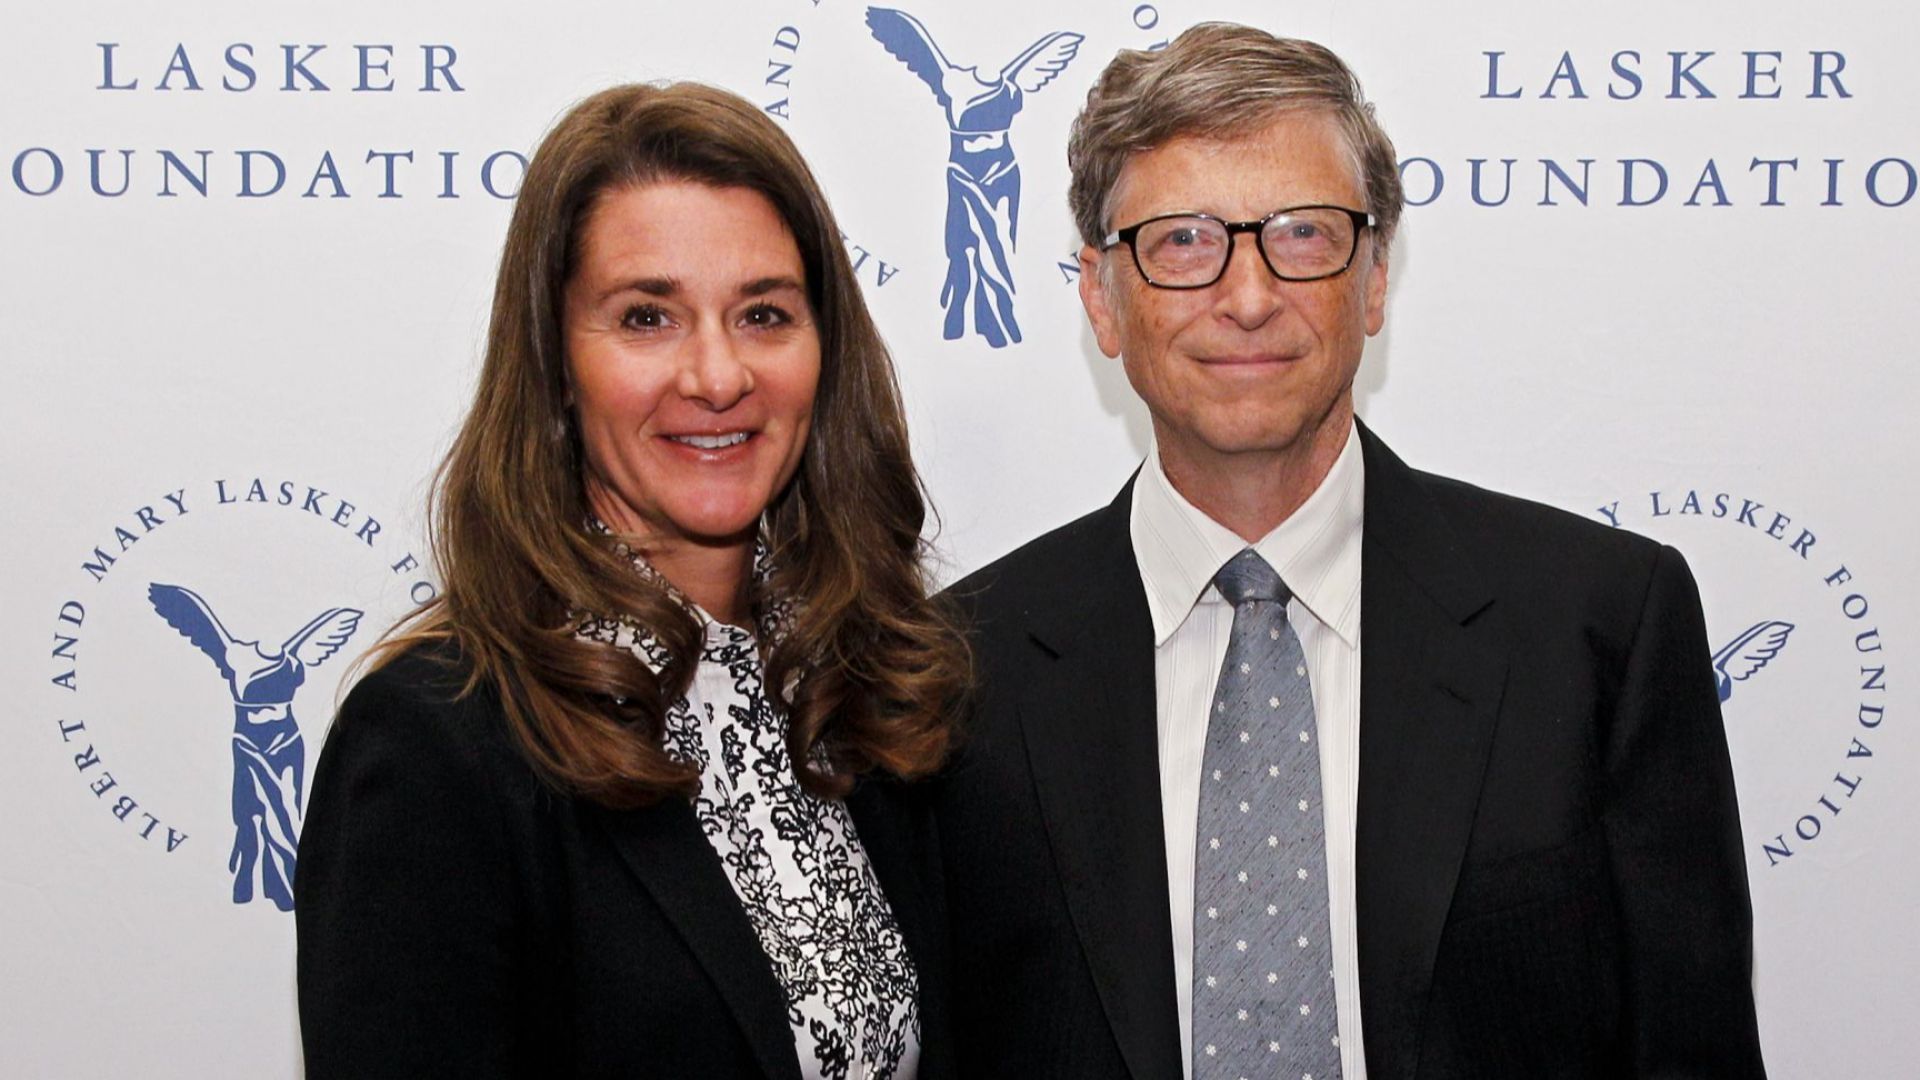 Бил и Мелинда Гейтс публикуваха нови снимки от сватбата на дъщеря си